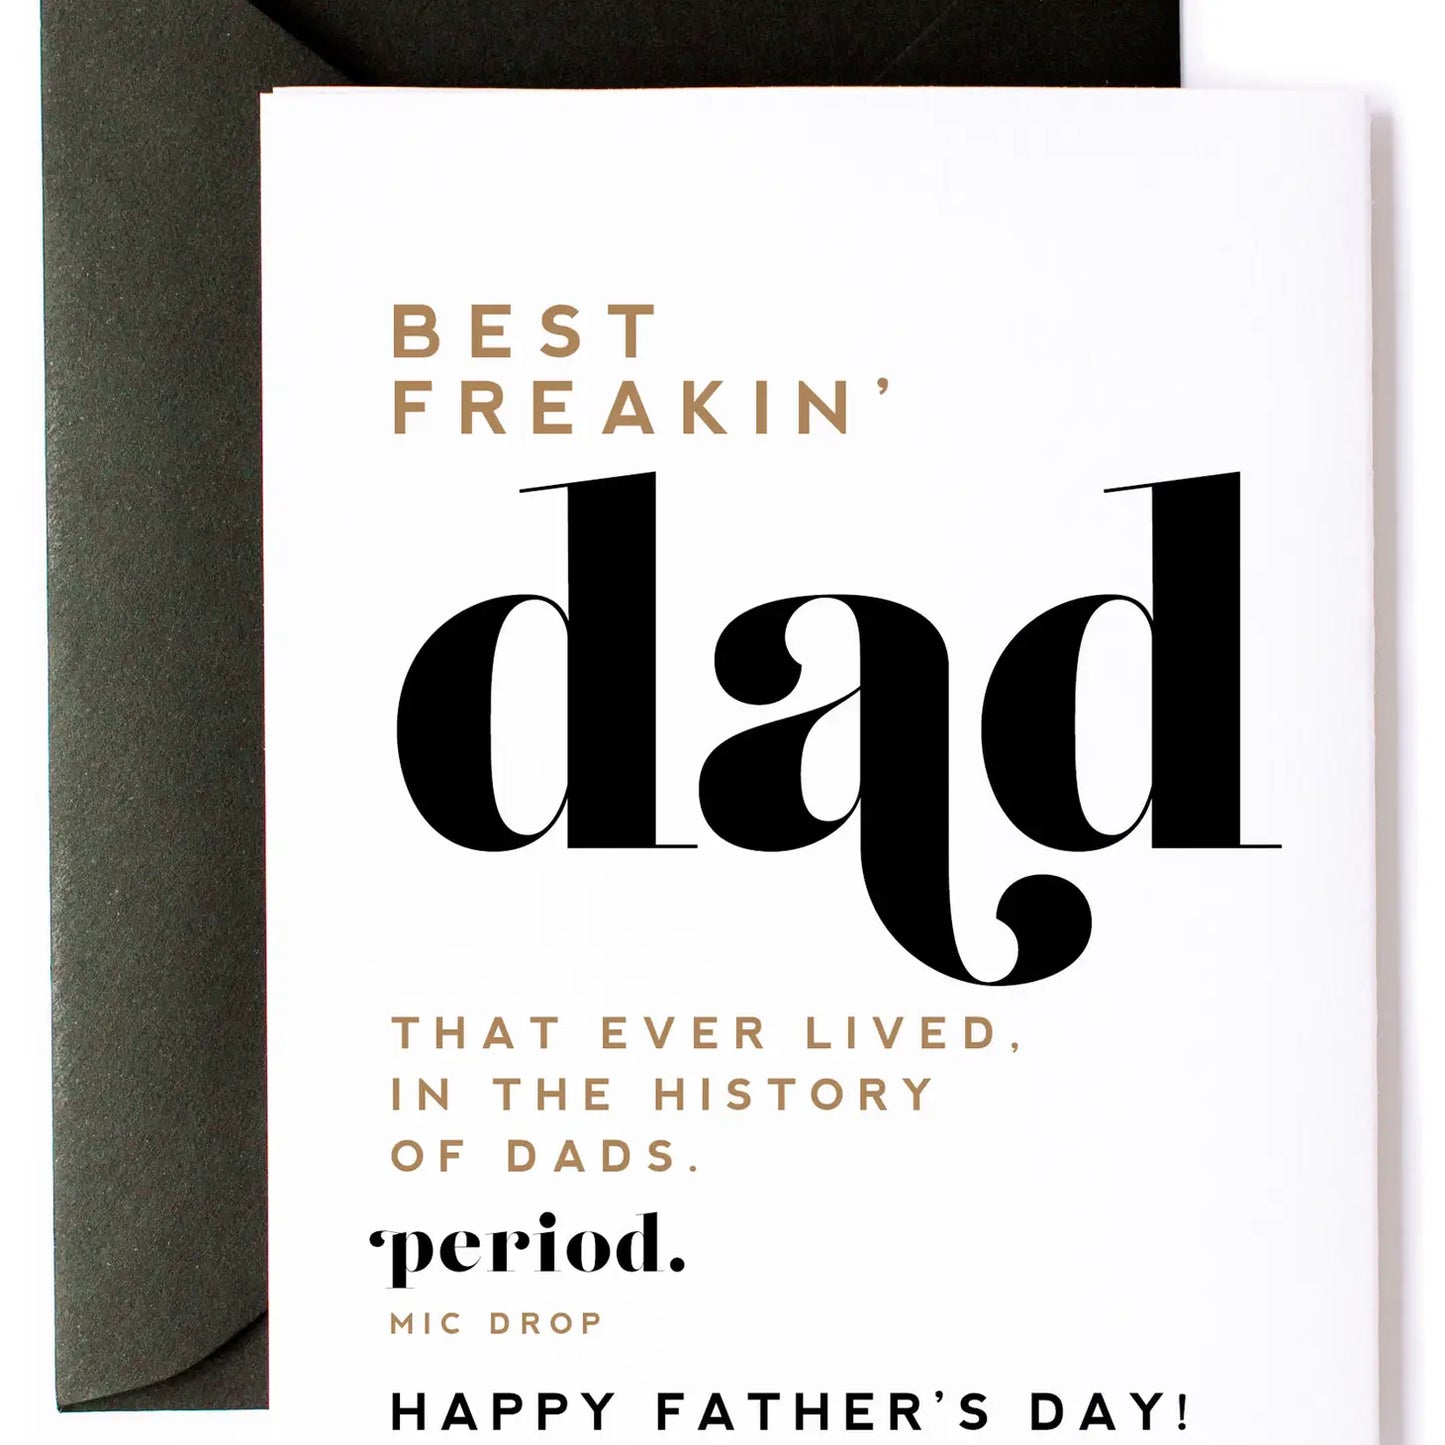 The Best Freakin' Dad Card